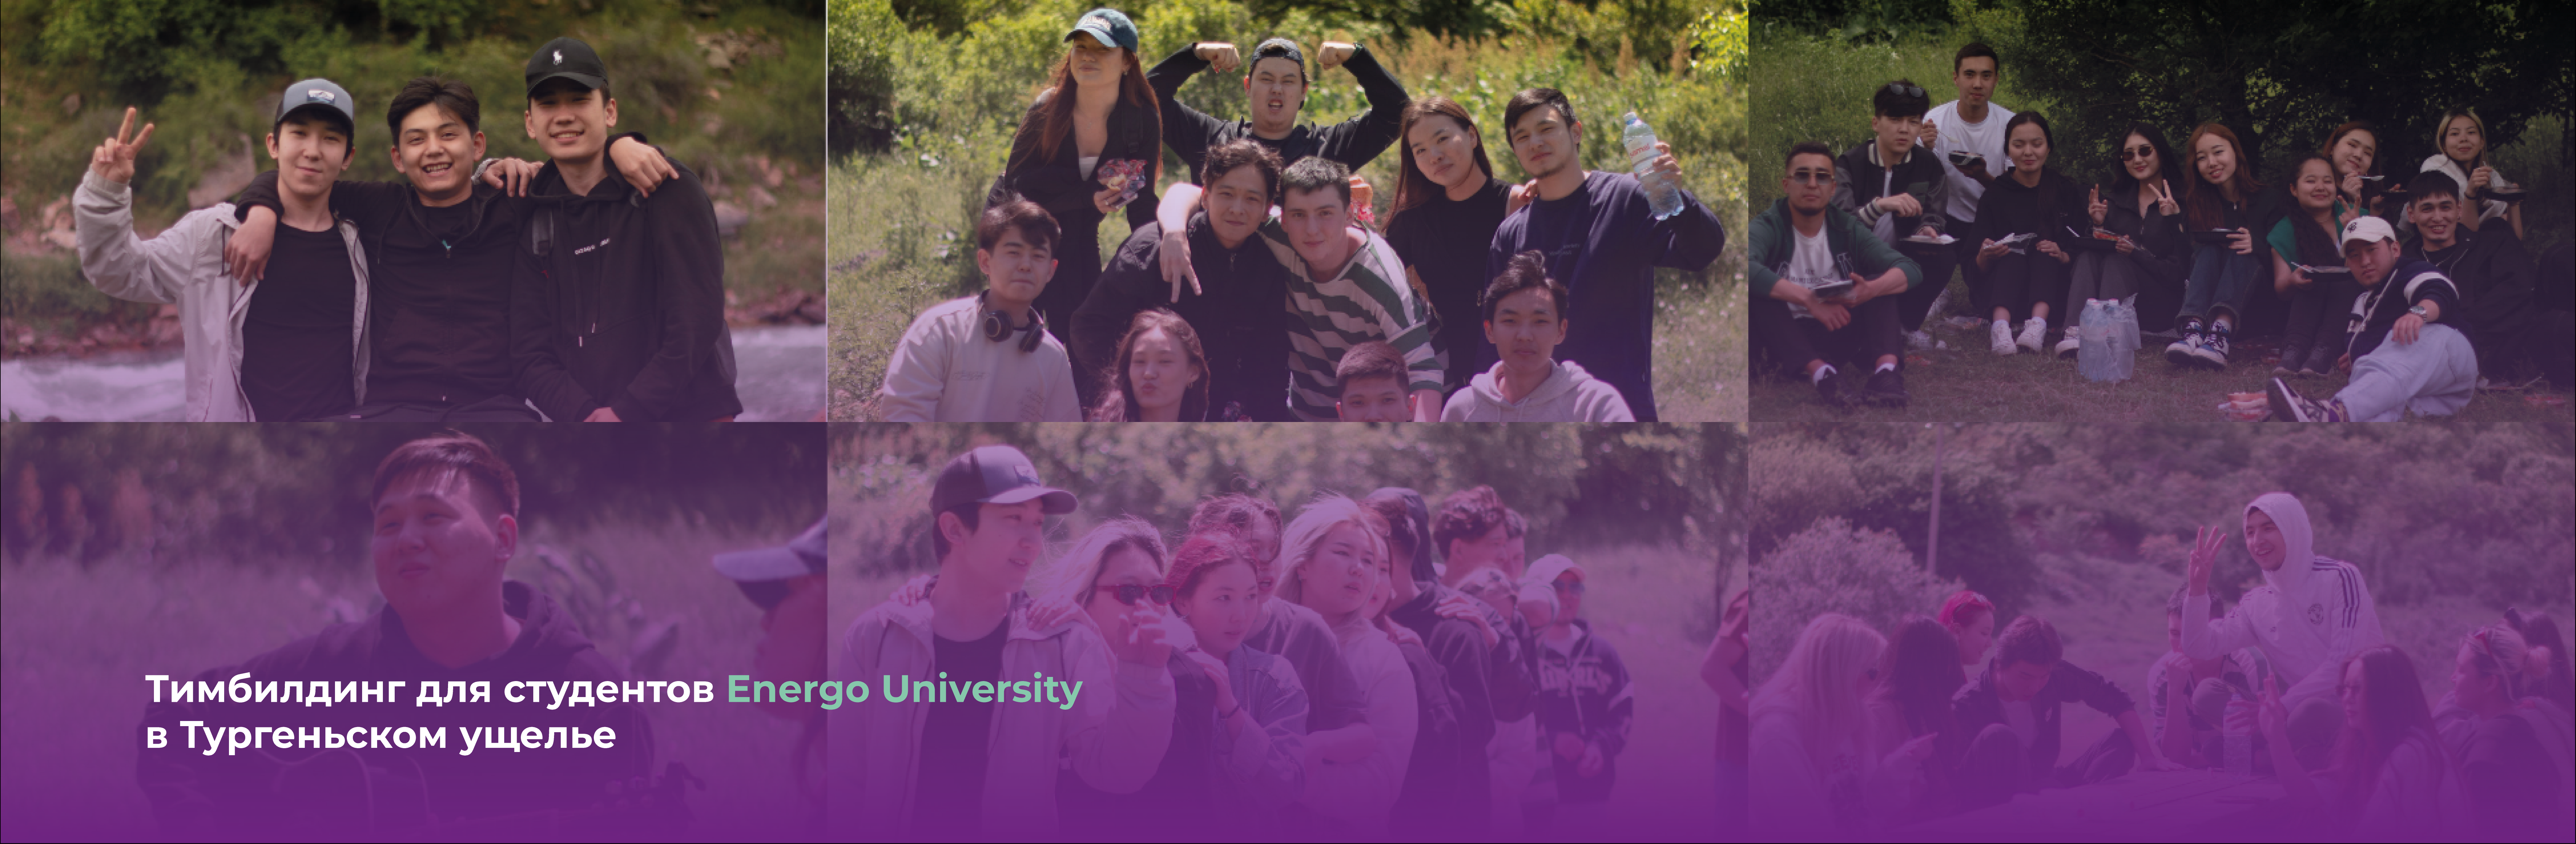 Тимбилдинг для студентов Energo University в Тургеньском ущелье 